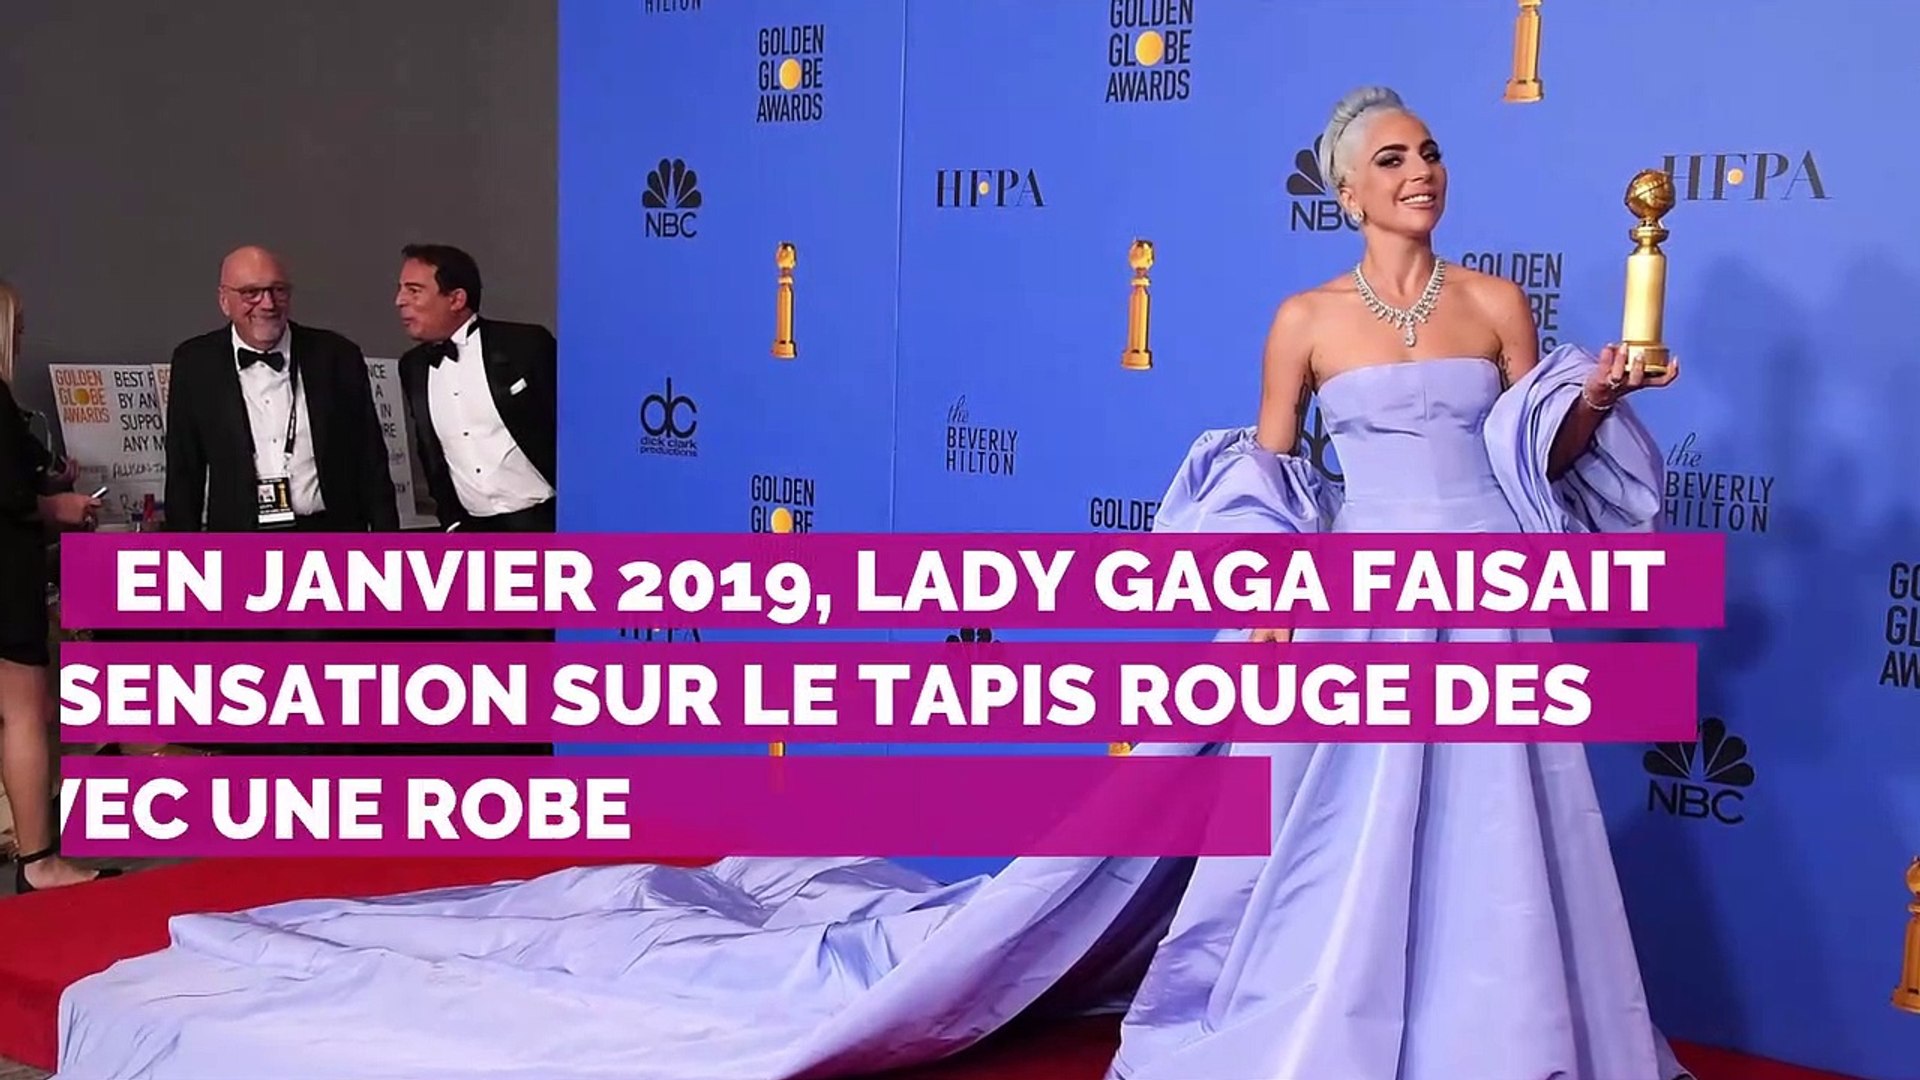 Quand une femme vend aux enchères une robe de Lady Gaga... laissée dans un  hôtel - Vidéo Dailymotion